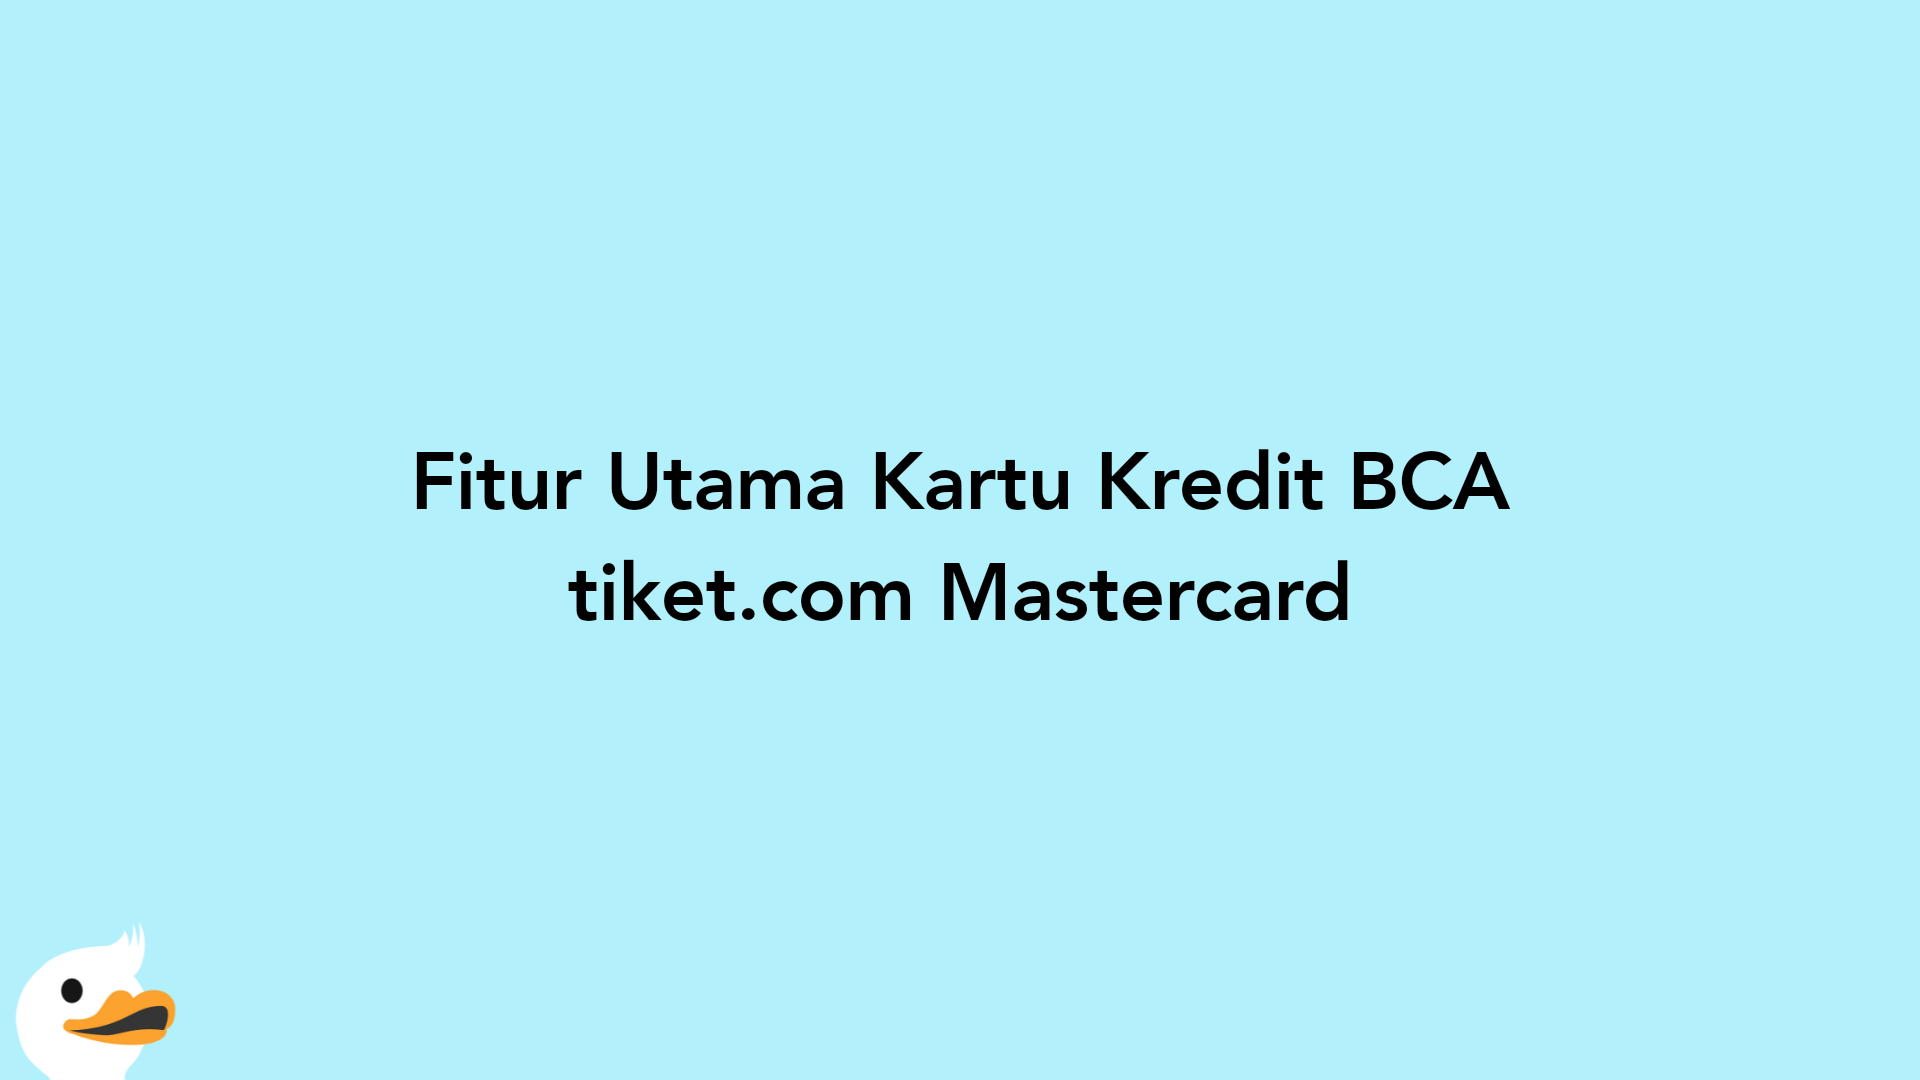 Fitur Utama Kartu Kredit BCA tiket.com Mastercard